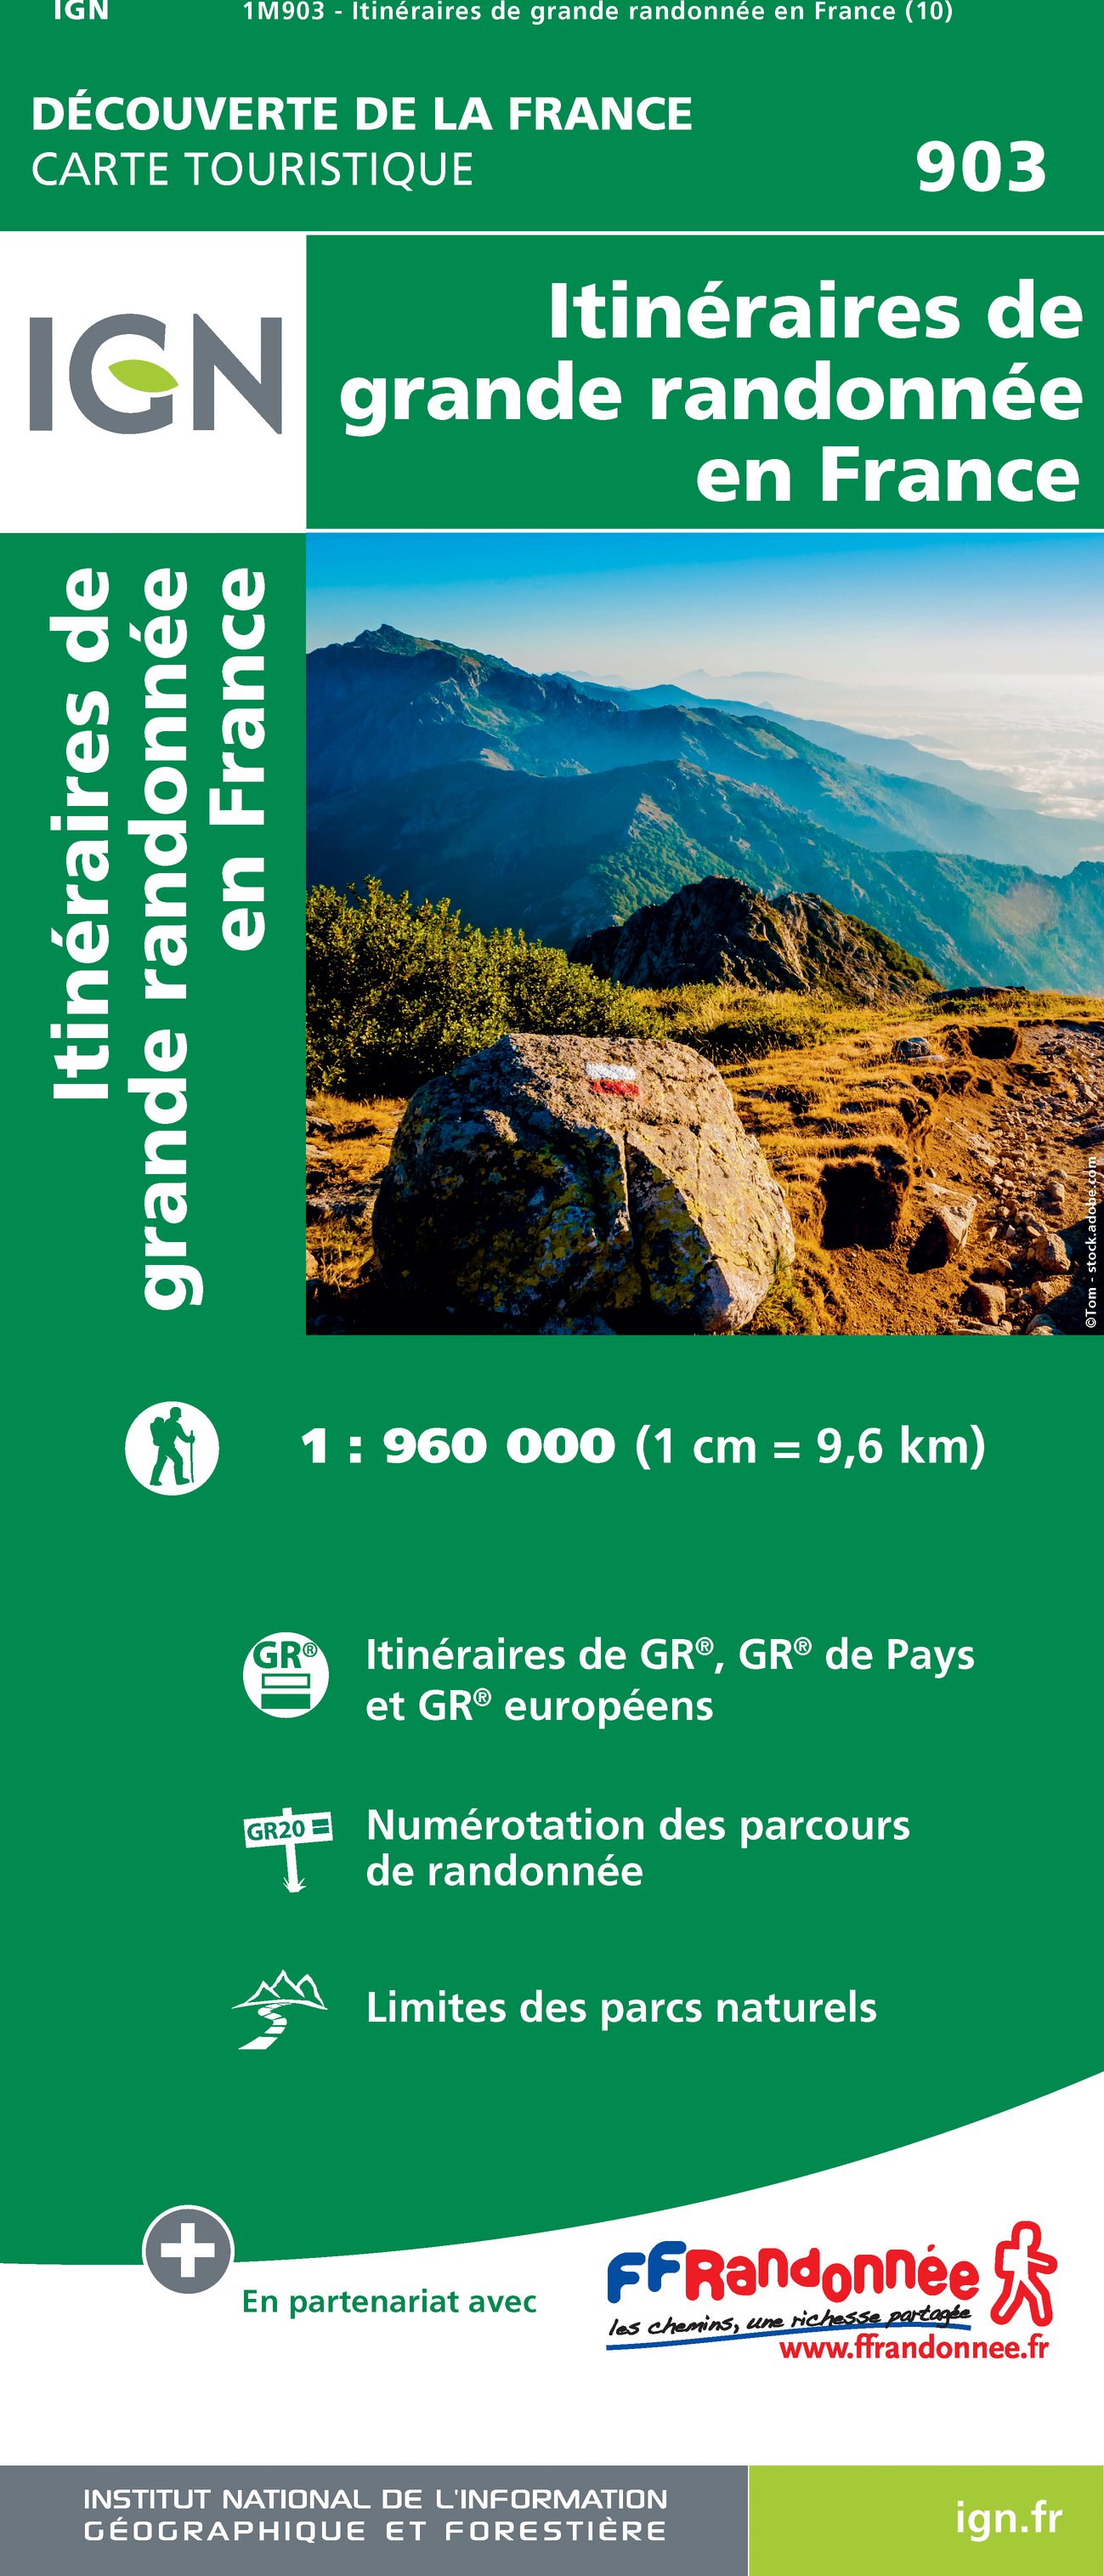 Online bestellen: Wandelkaart 903 Frankrijk GR routes - overzicht | IGN - Institut Géographique National